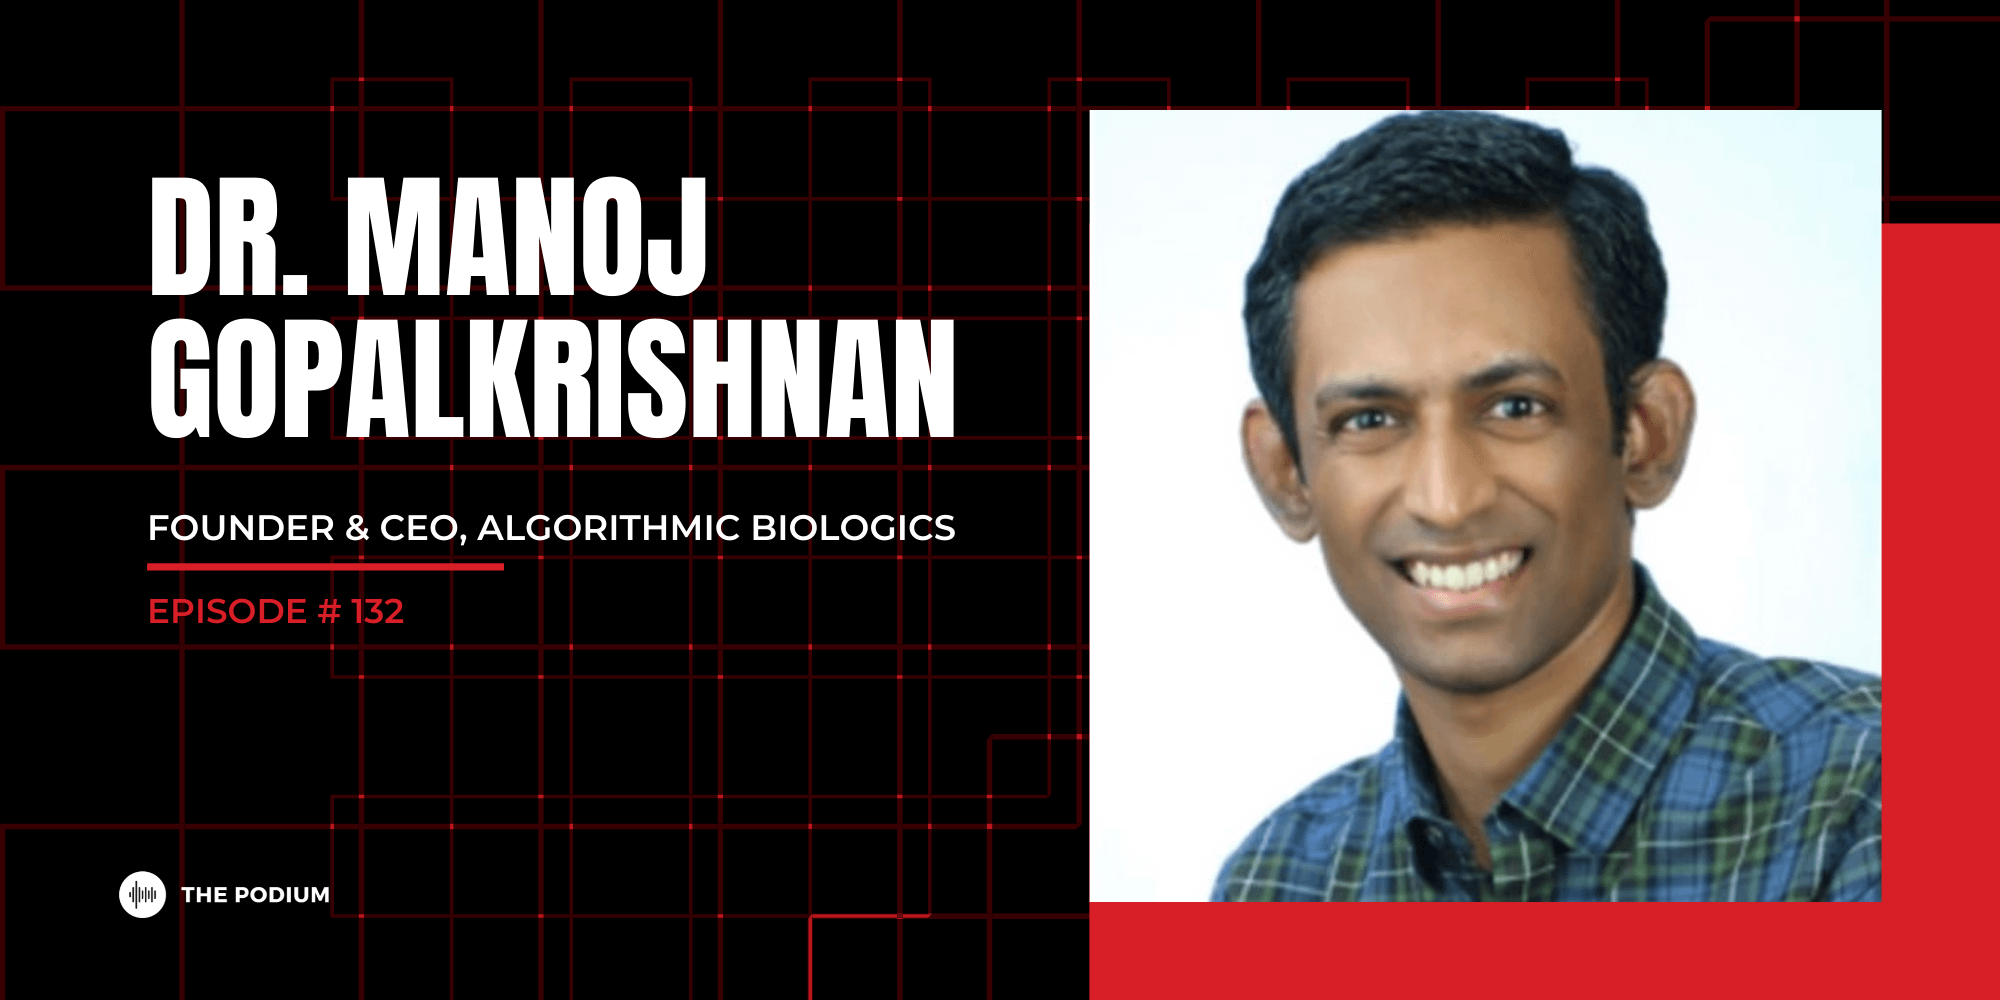 Disrupting Biology With Algorithms | Dr. Manoj Gopalkrishnan @ Algorithmic Biologics